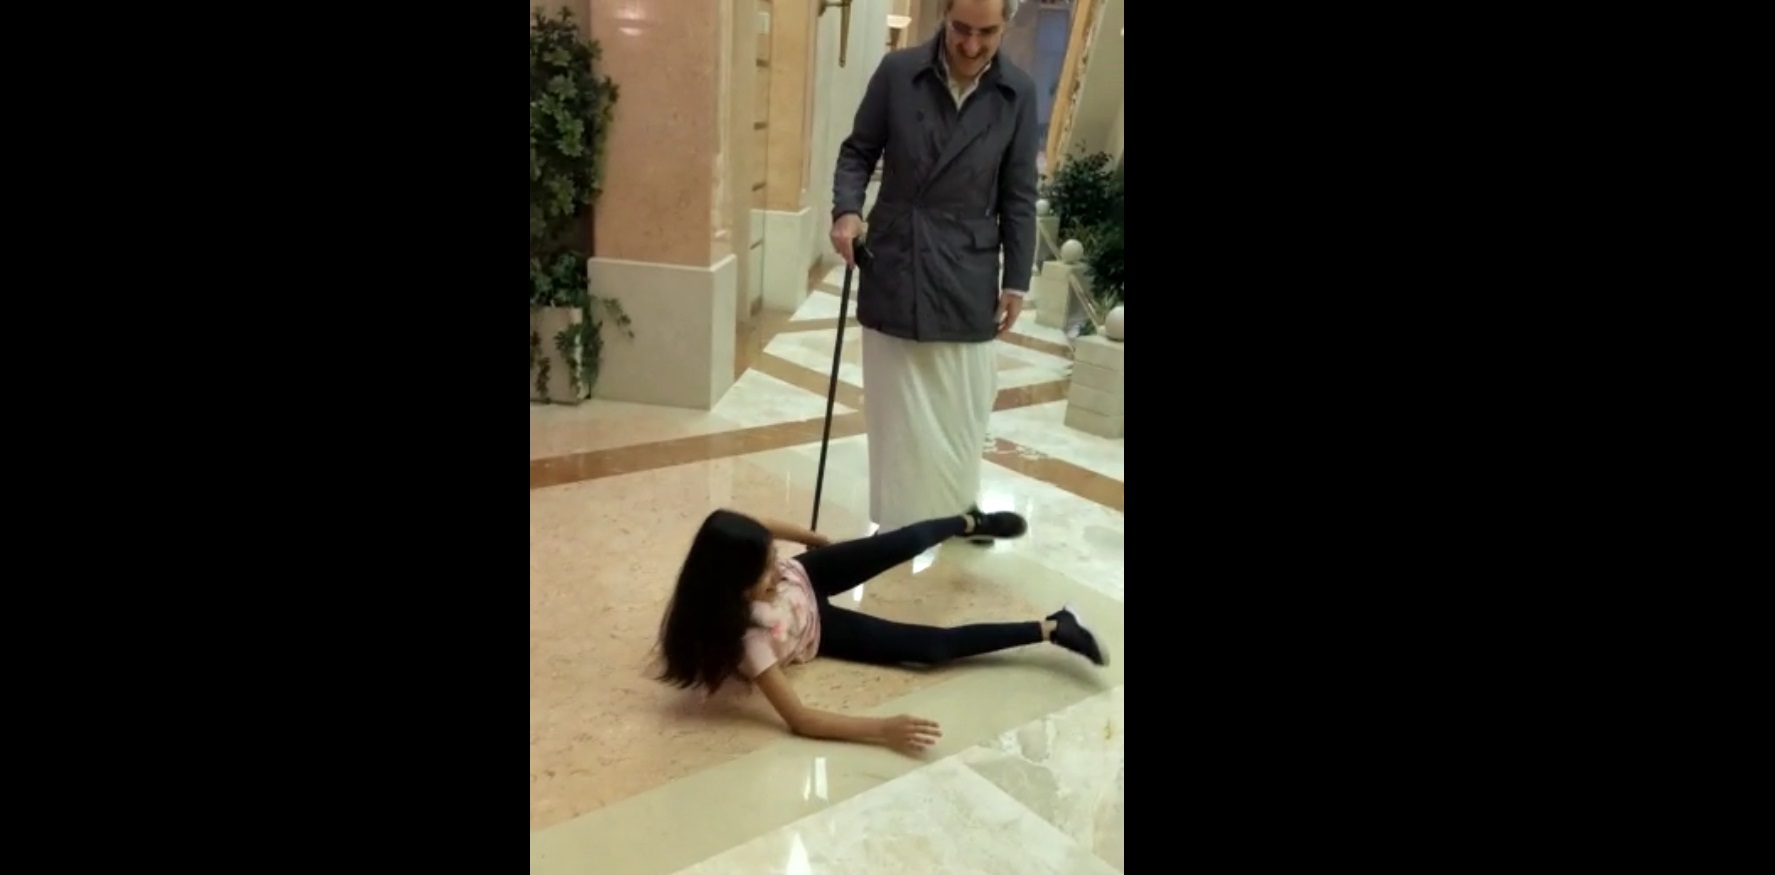 فيديو.. الوليد بن طلال يمزح بعفوية مع حفيدته ويسحبها على الأرض